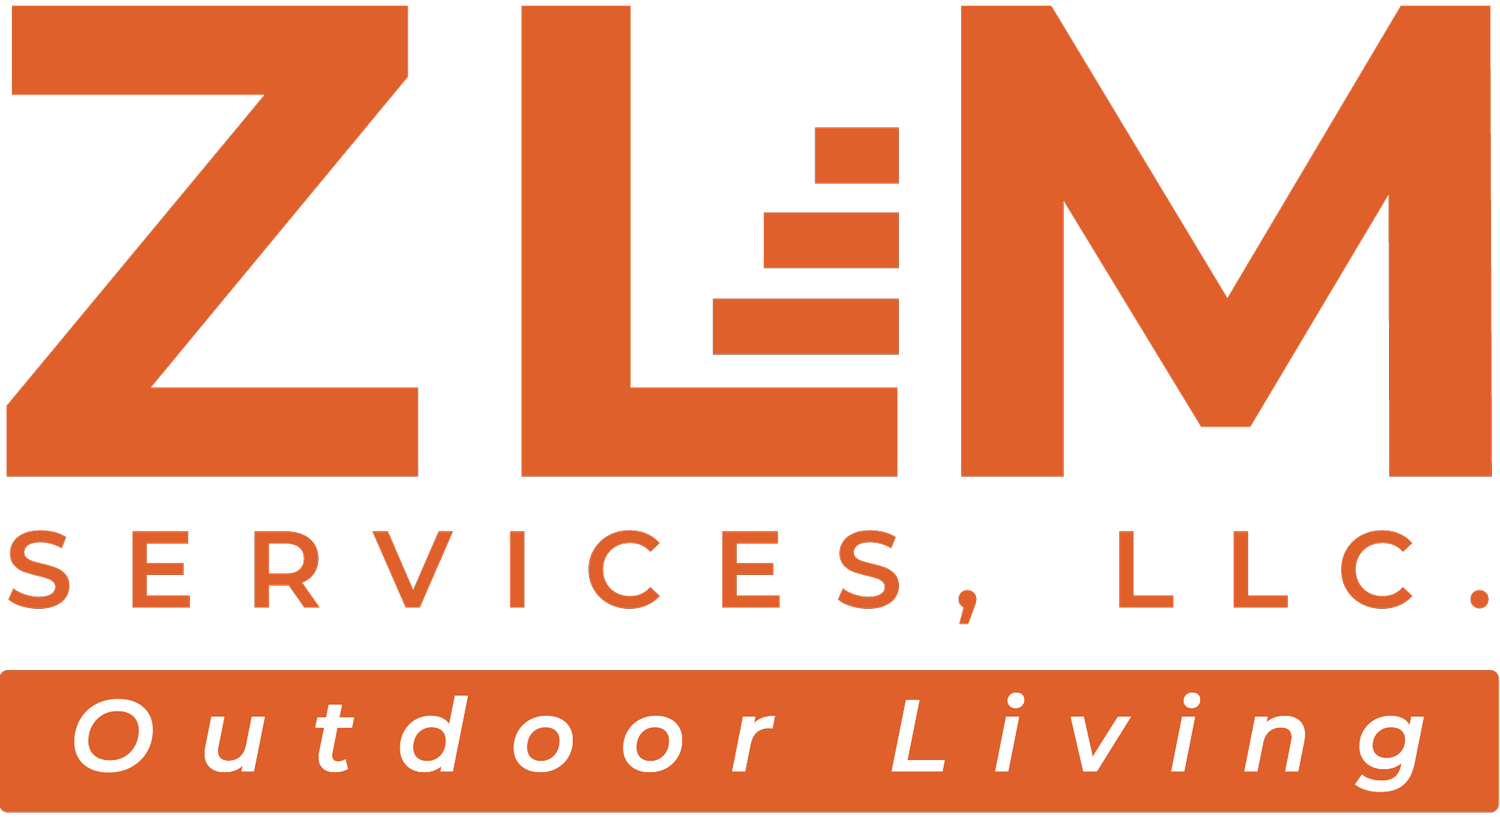 ZLM Services LLC